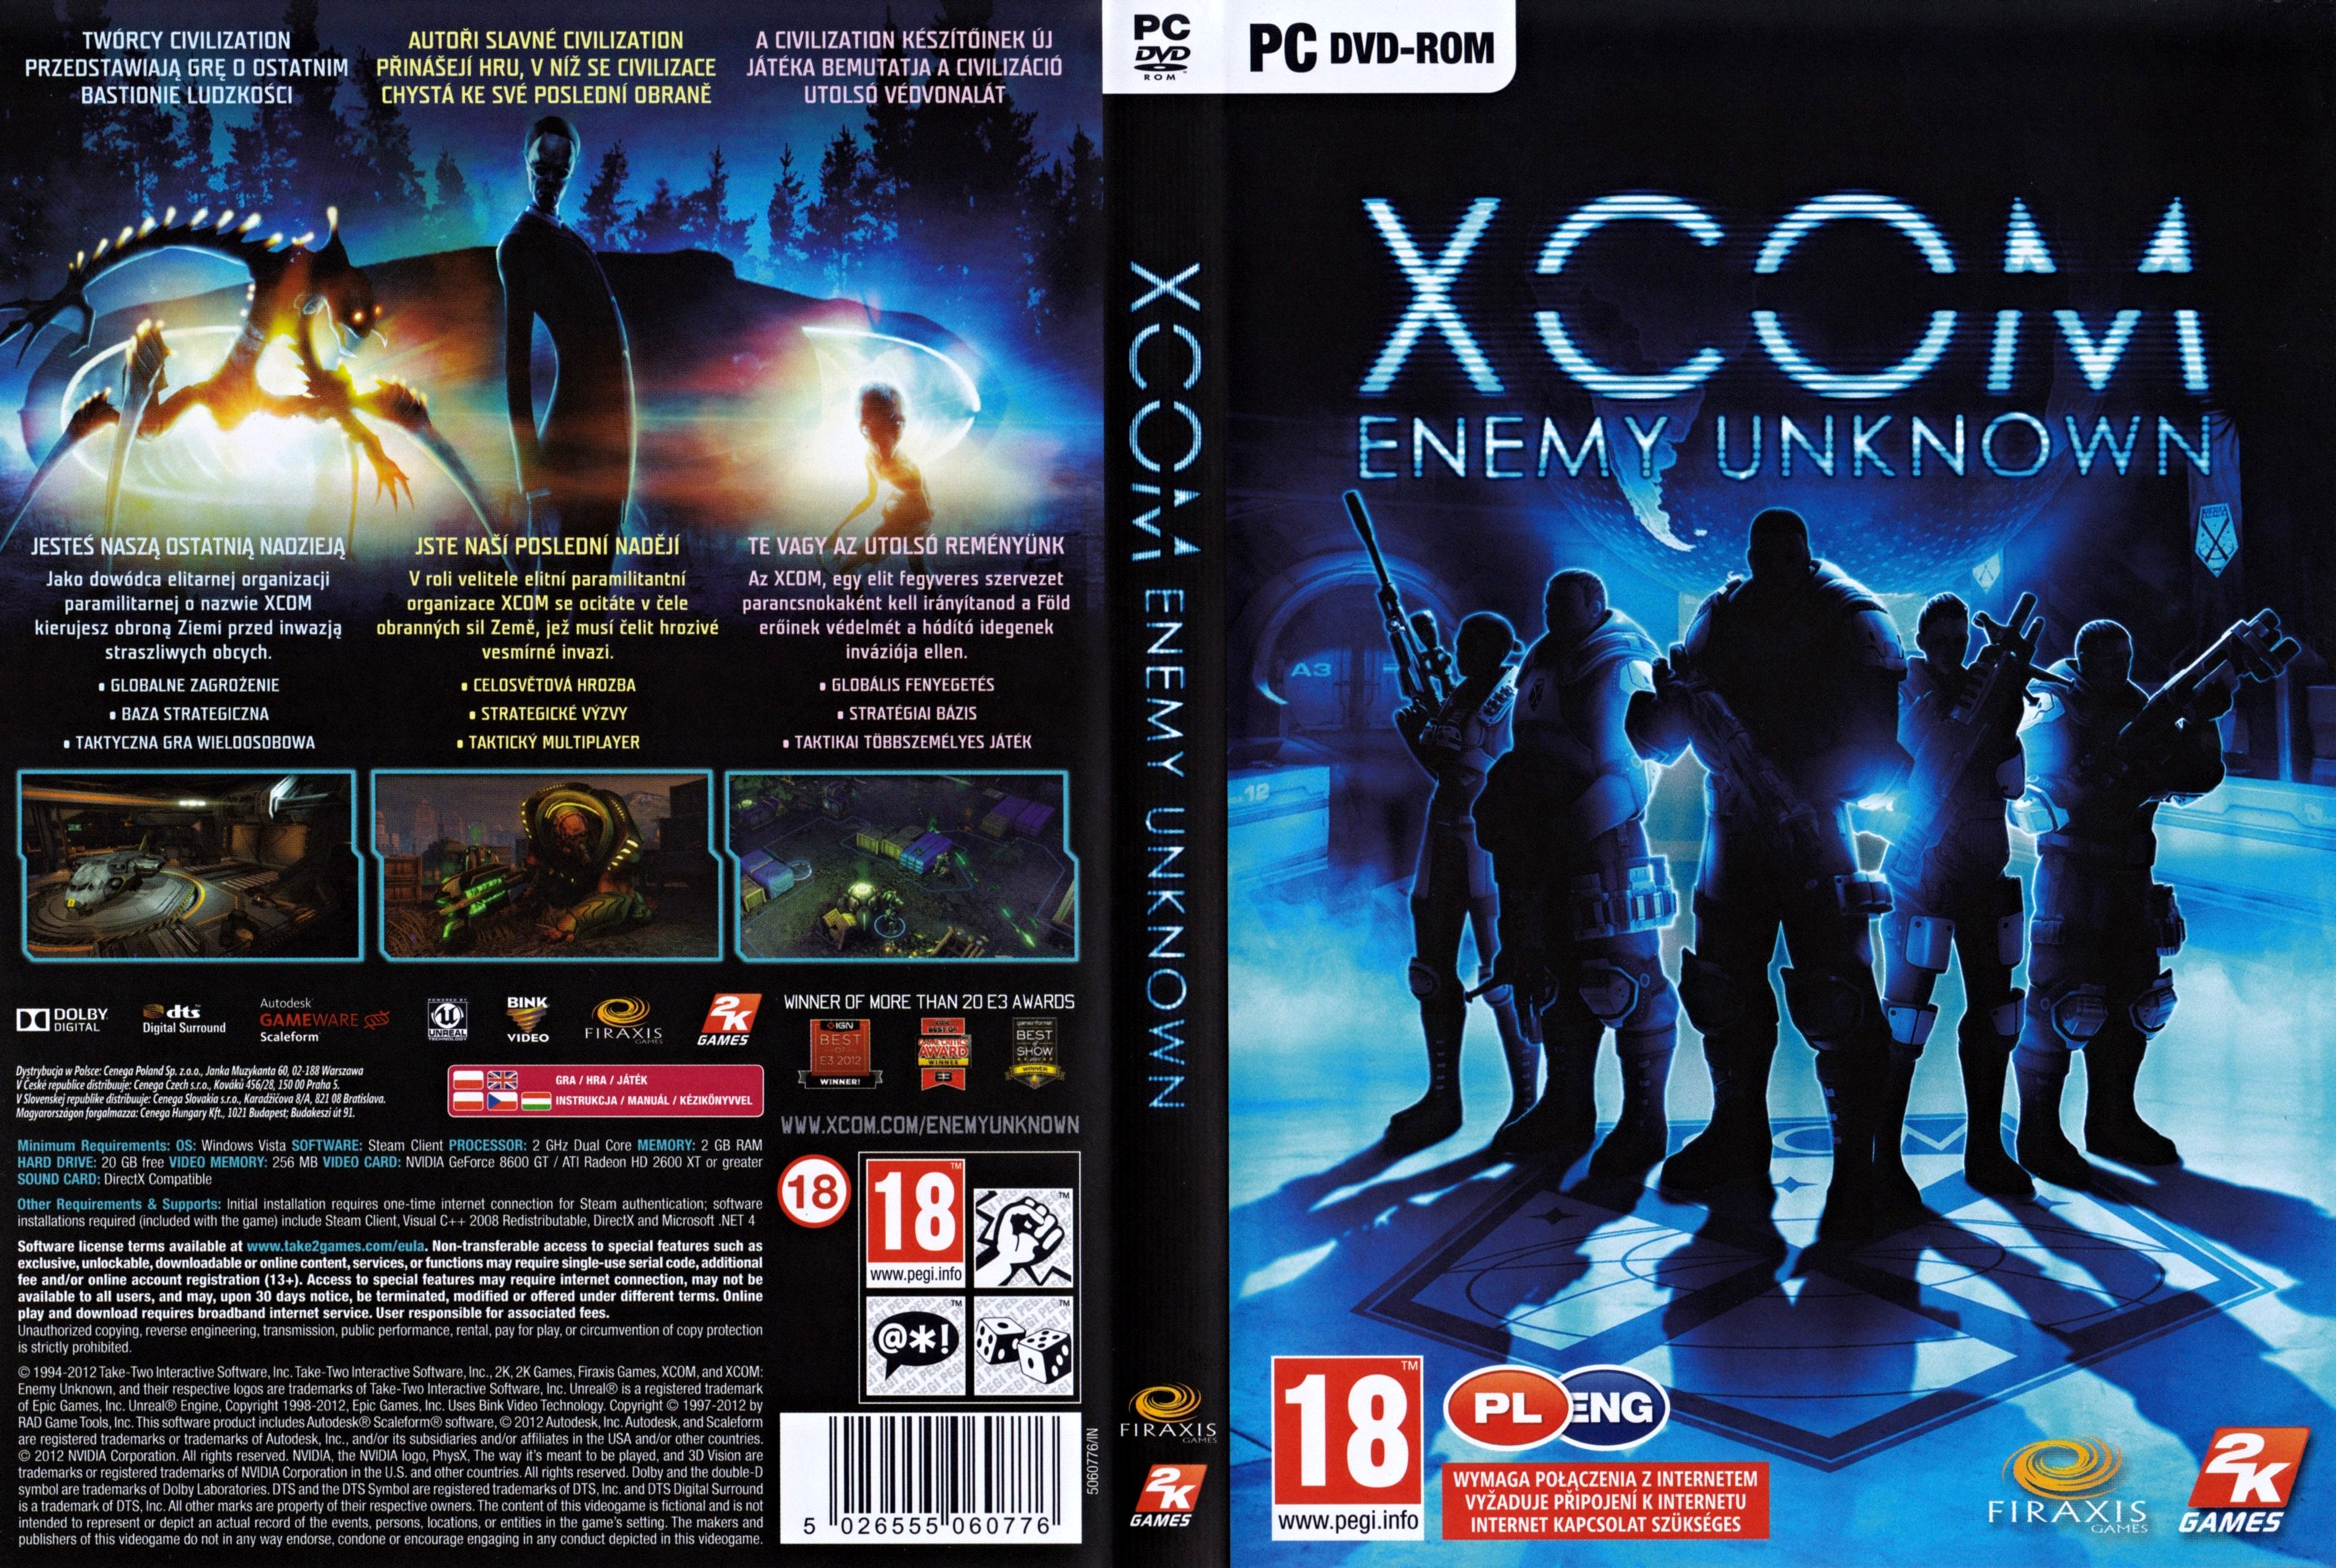 XCOM: Enemy Unknown - DVD obal